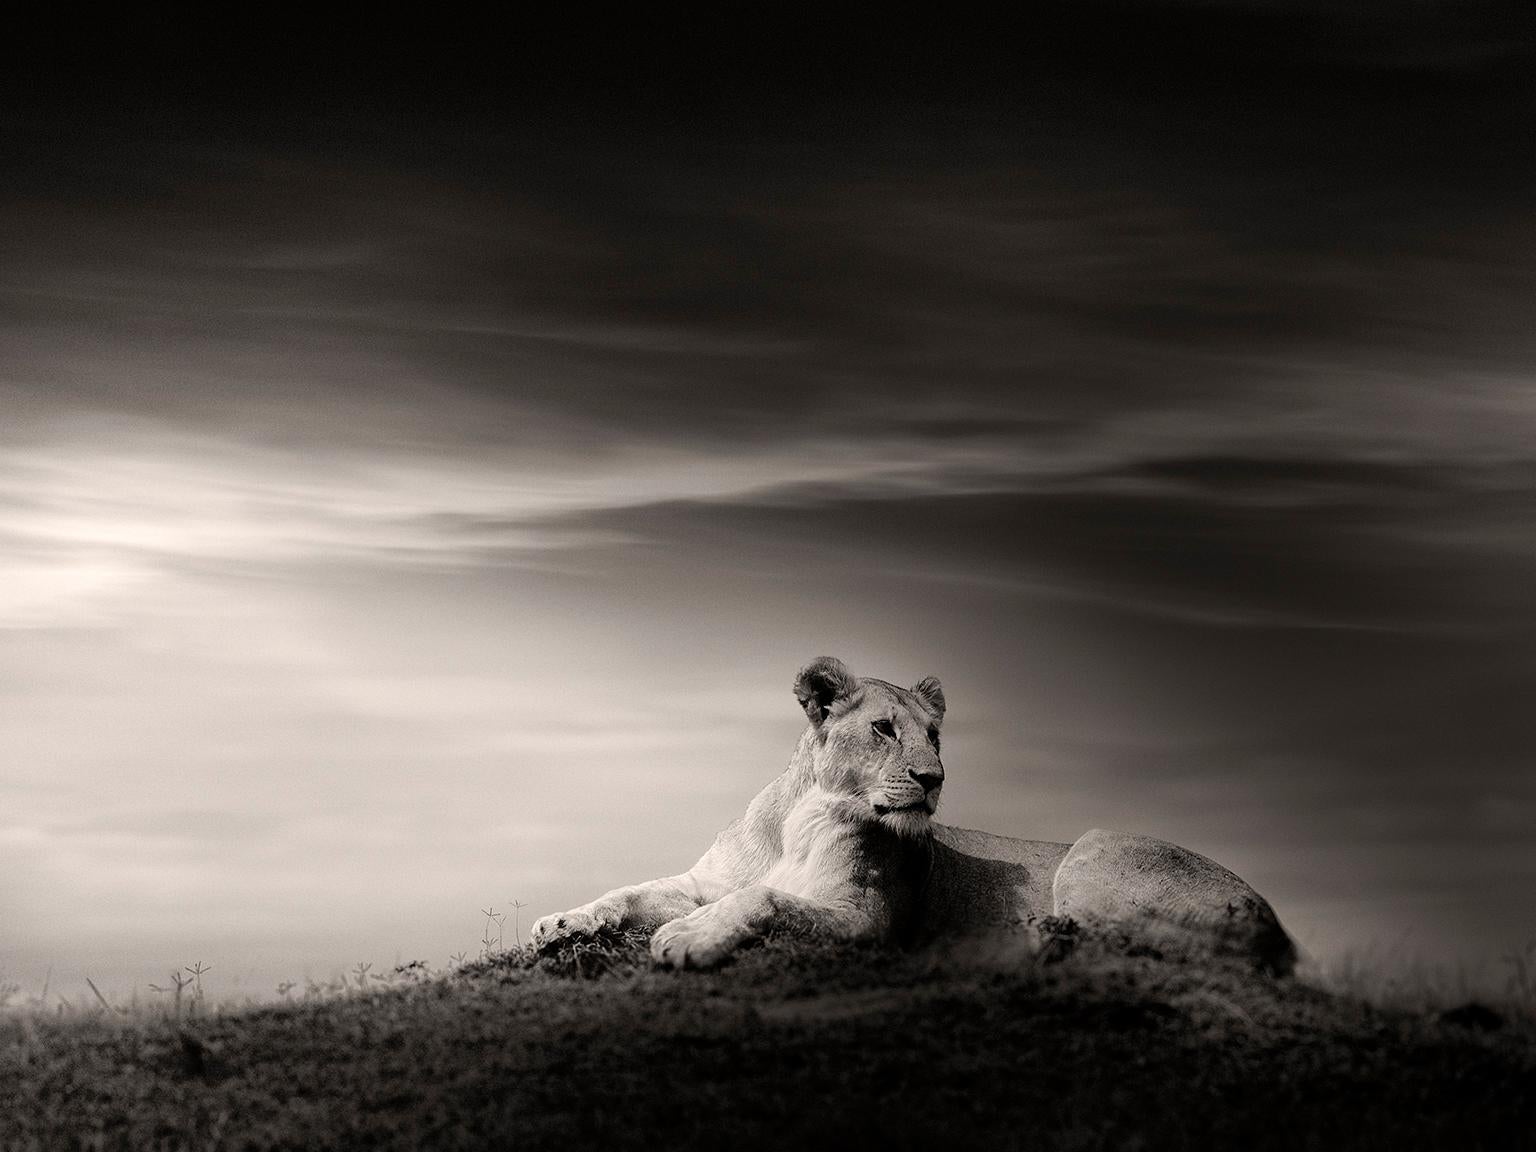 Joachim Schmeisser Black and White Photograph - The Lioness, Lion, black and white photography, Africa, Portrait, Wildlife